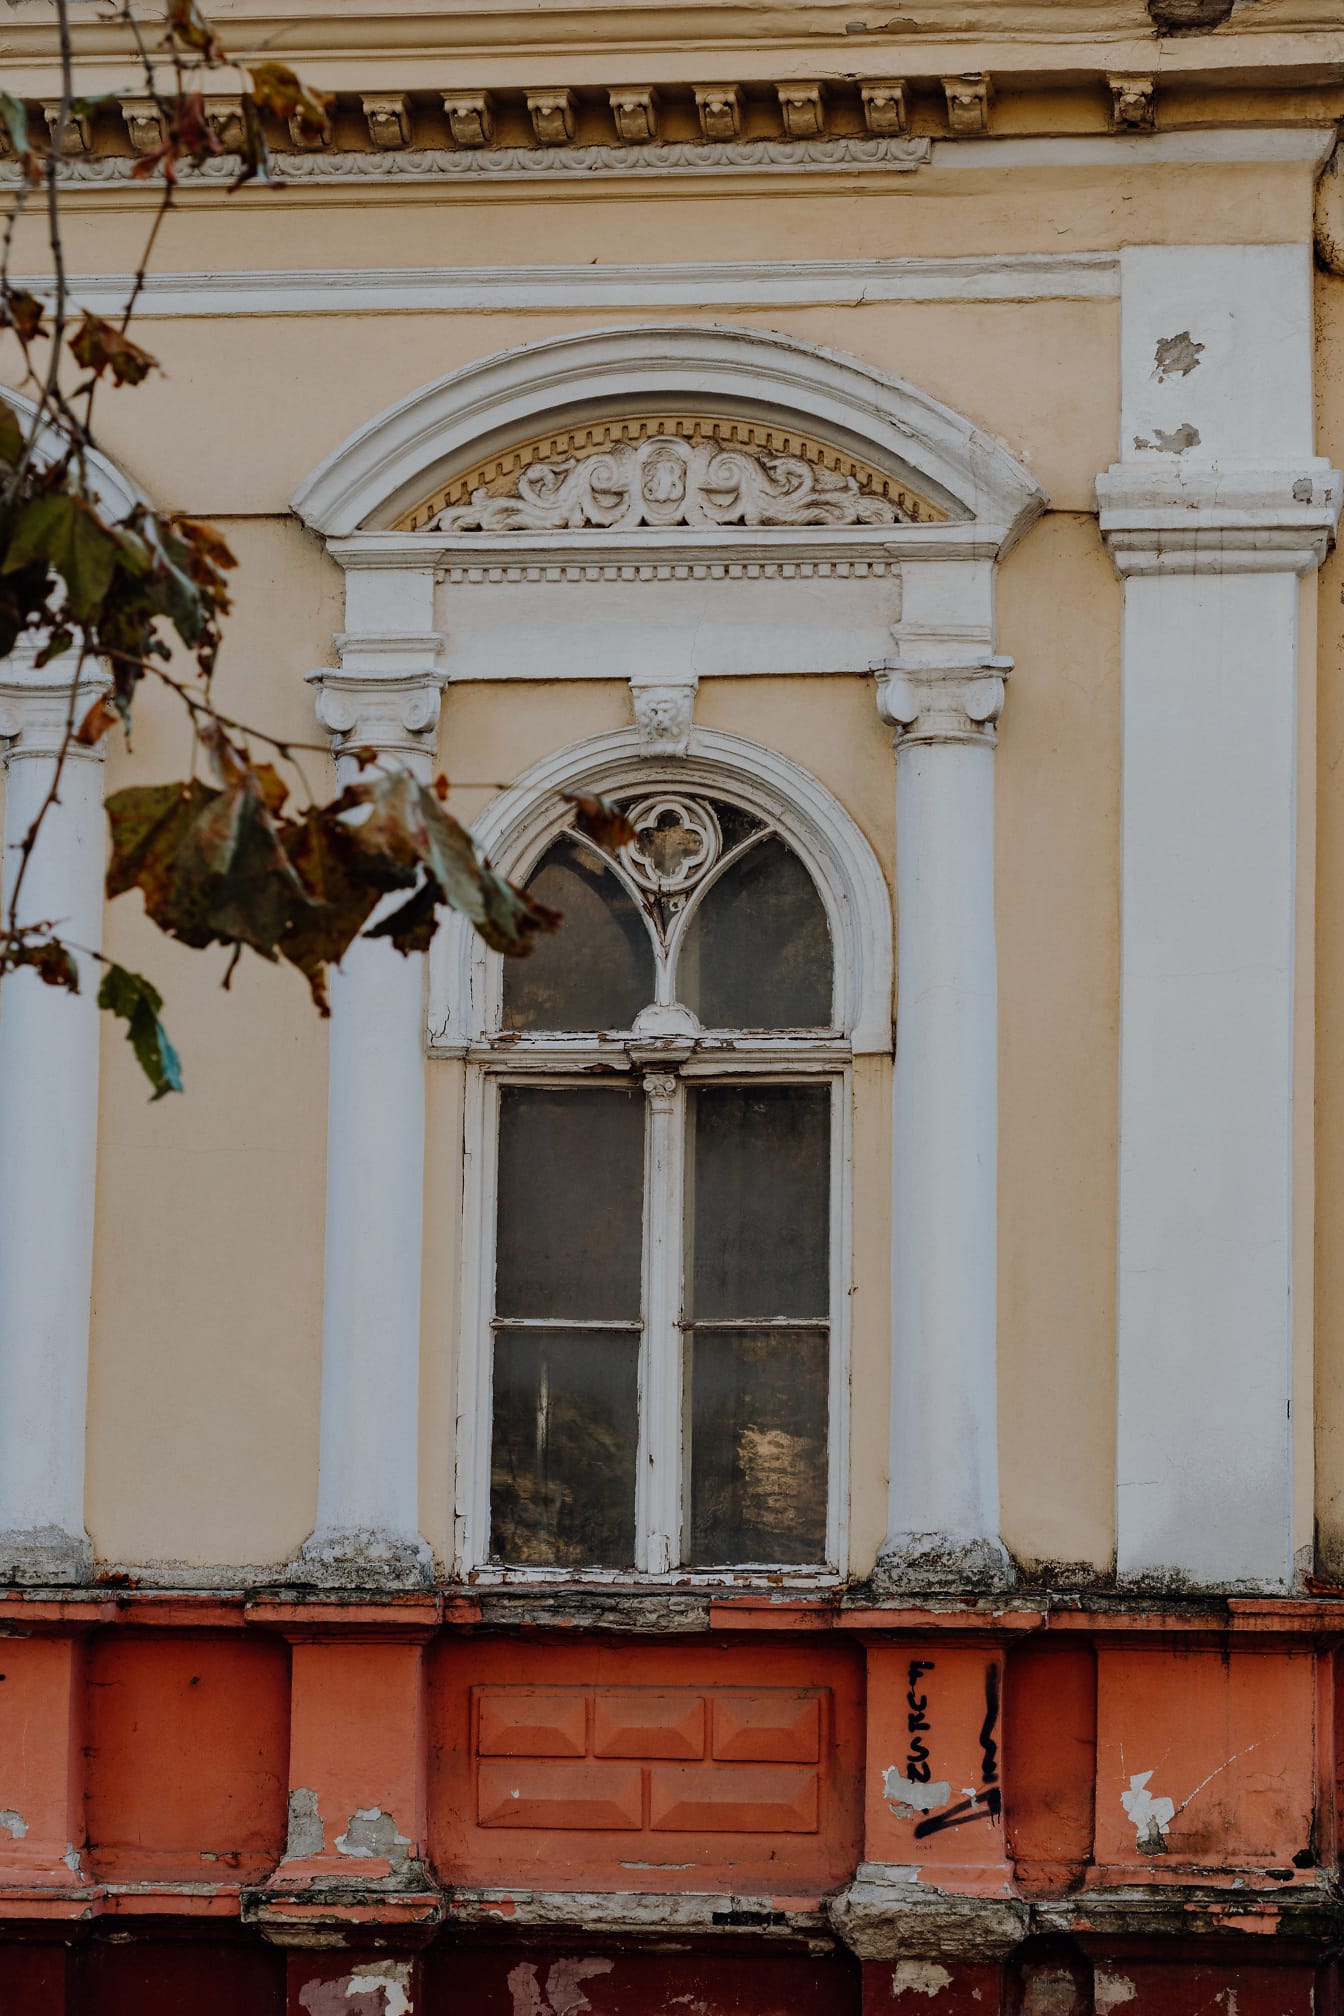 Fațada degradată a casei vechi cu fereastră din lemn și decor unic